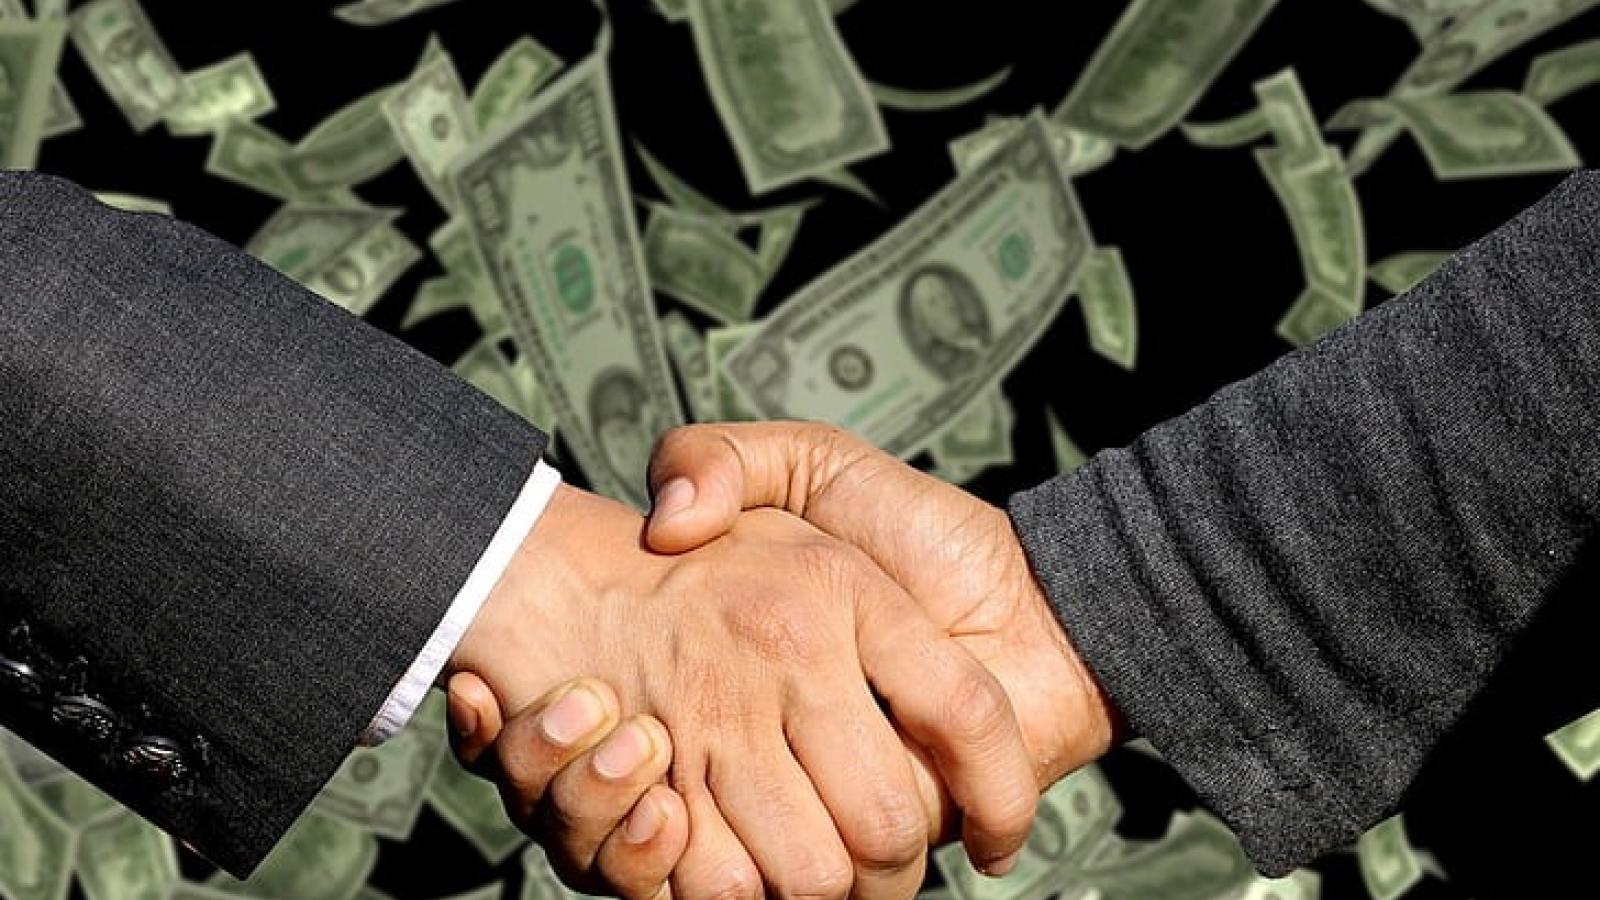 Handshake over Money bills